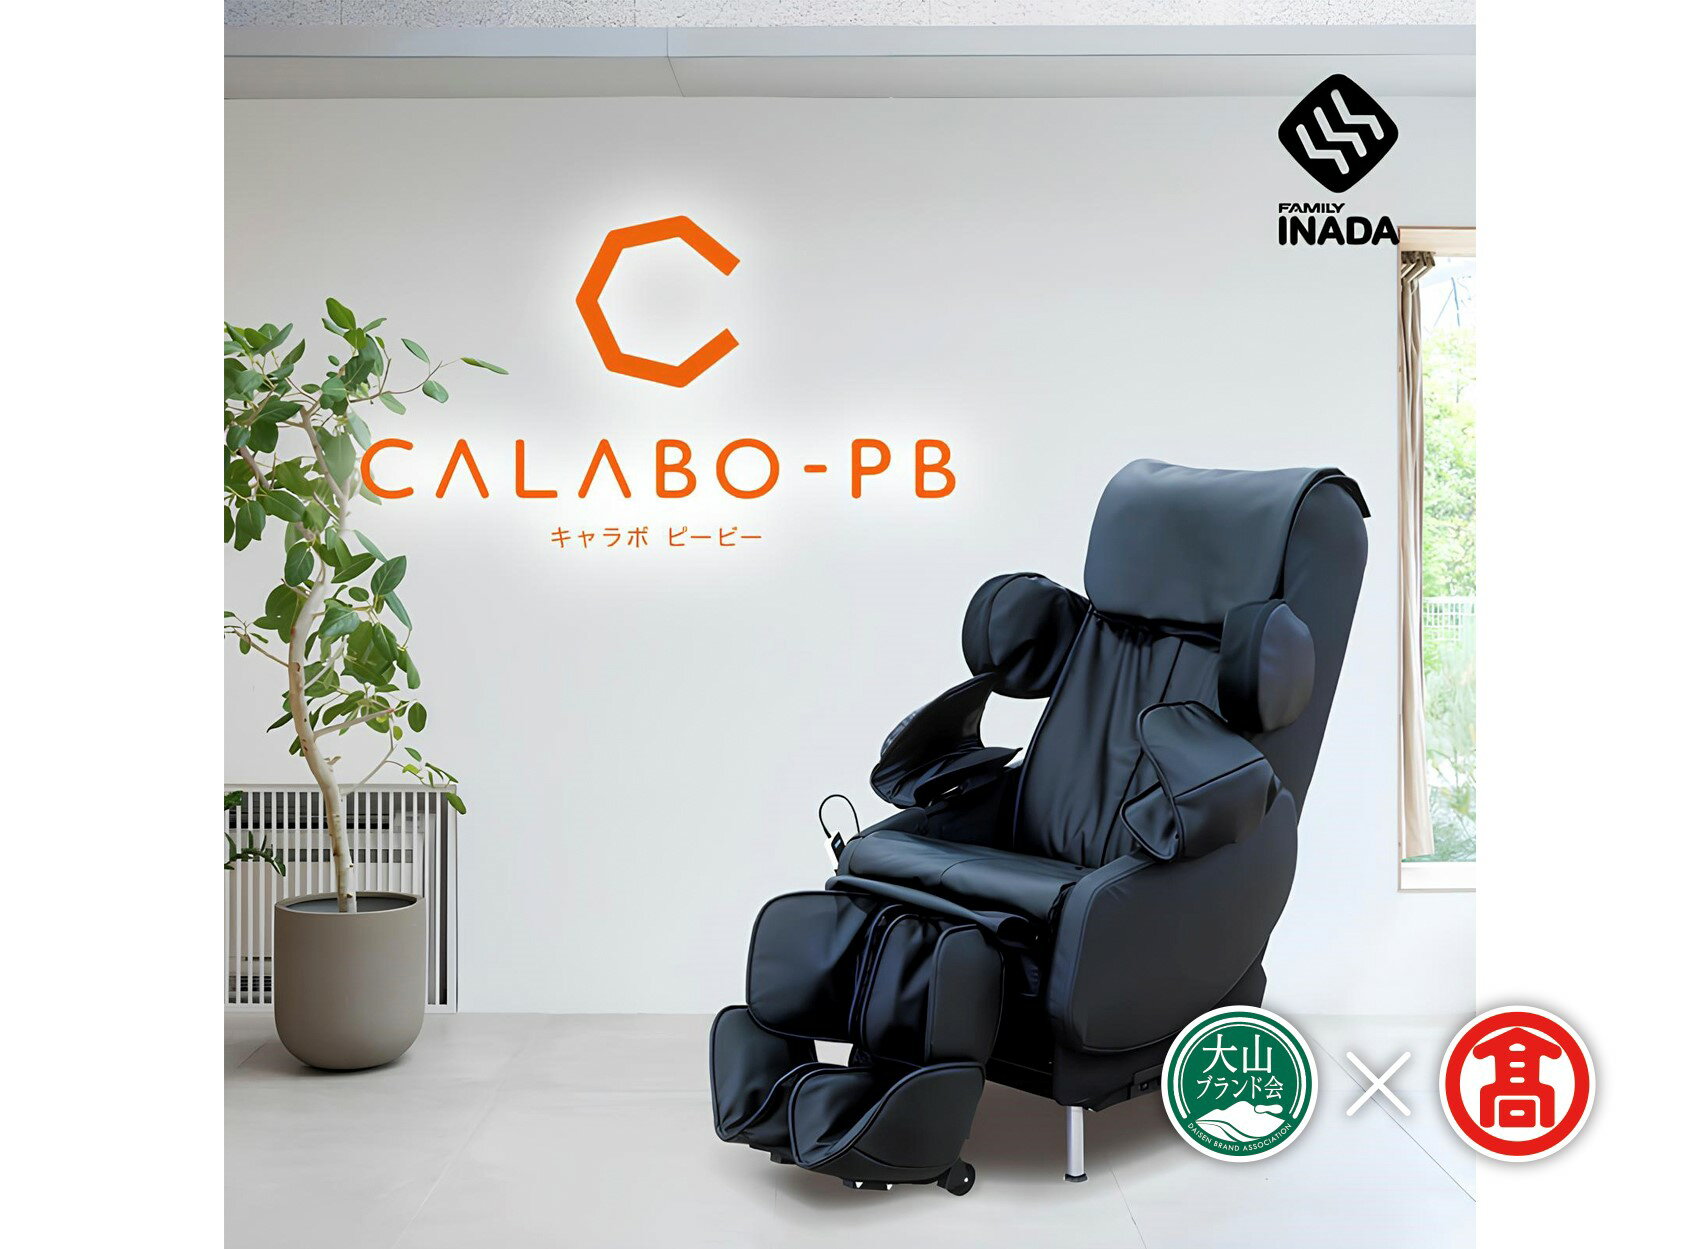 [ファミリーイナダ] キャラボ CALABO PB [合皮レザー] (大山ブランド会) CT12 医療機器 / 家庭用 / マッサージチェア /メディカルチェア